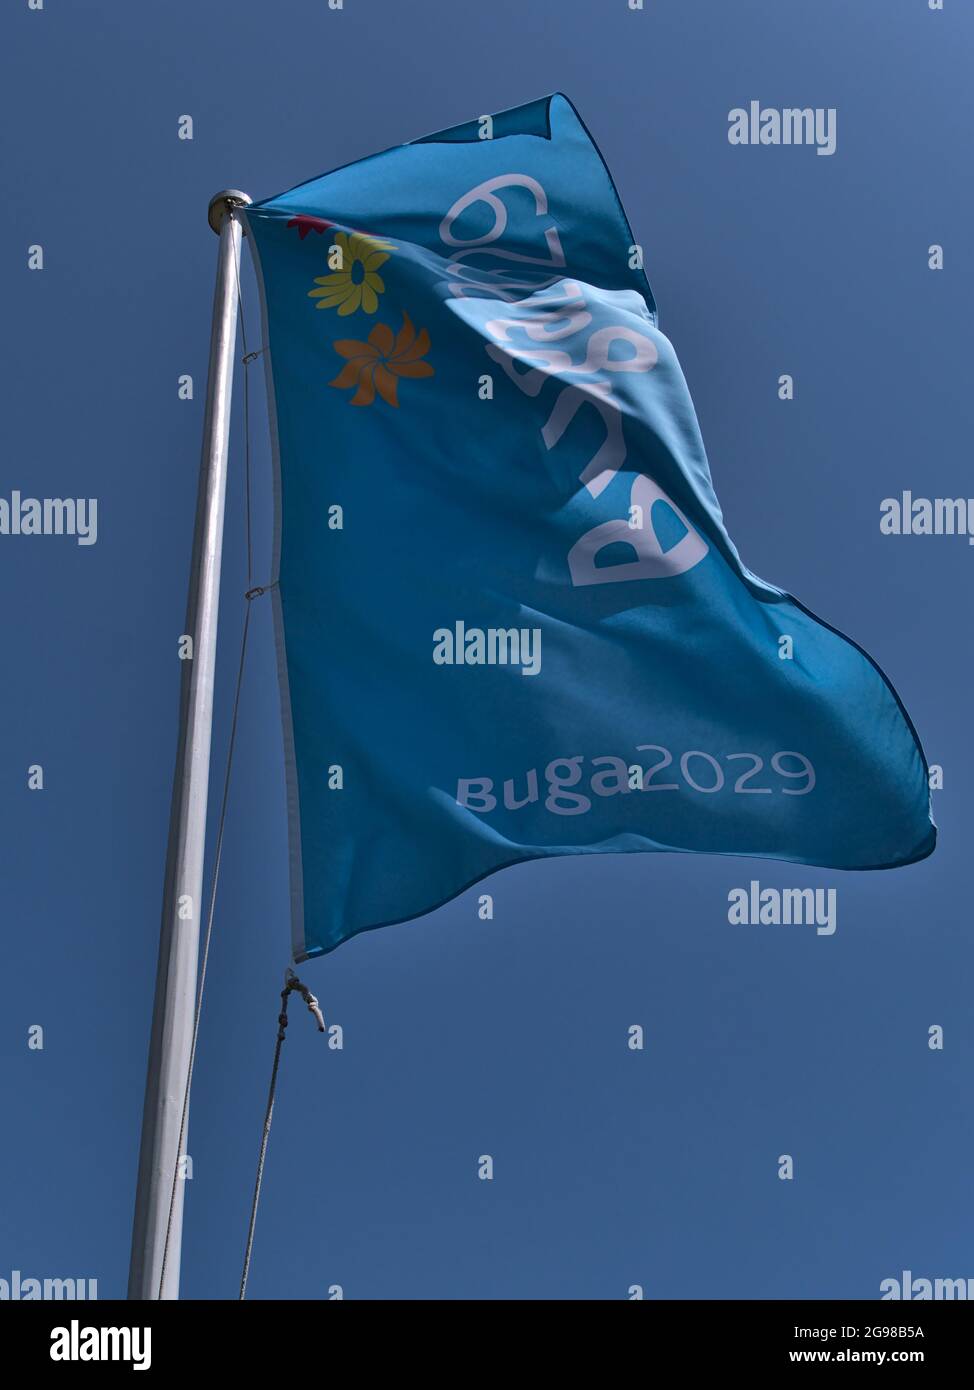 Flachwinkelansicht des Fahnenmastes mit hellblauer Flagge für die Bundesgartenschau (BUGA) 2029, eine alle zwei Jahre stattfindende Gartenbaumesse. Stockfoto